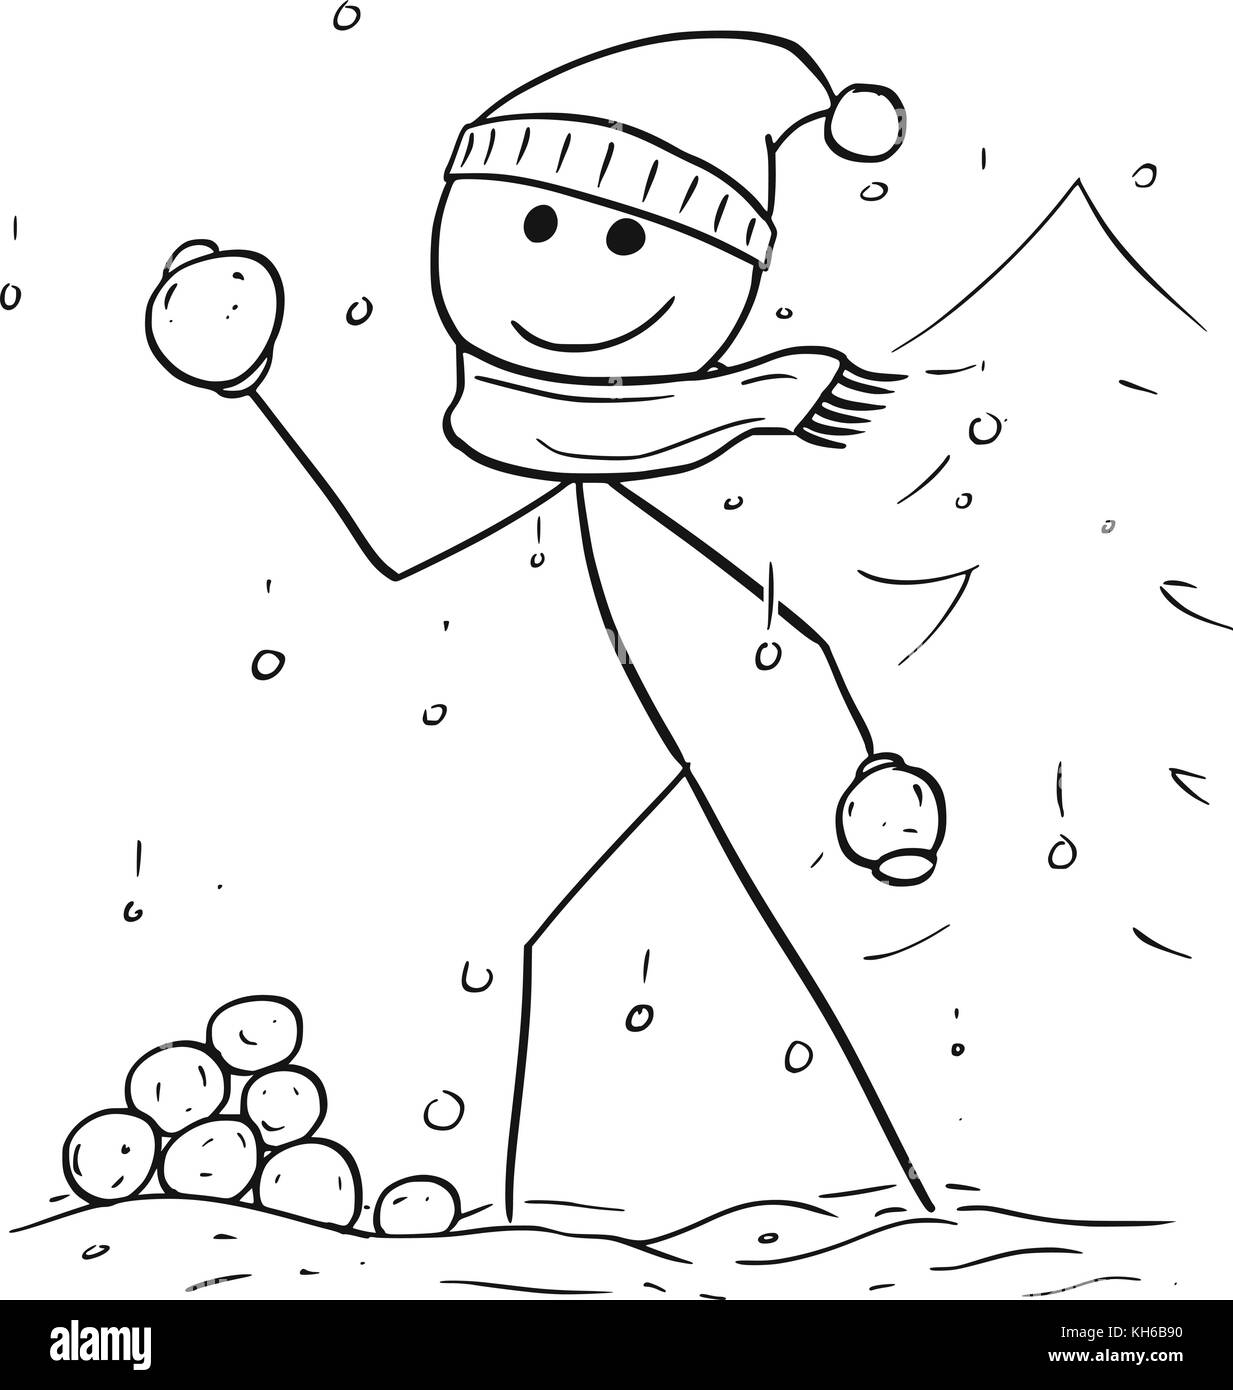 Cartoon stick man dessin illustration de man holding et du lancer de neige pendant l'hiver de neige. Illustration de Vecteur